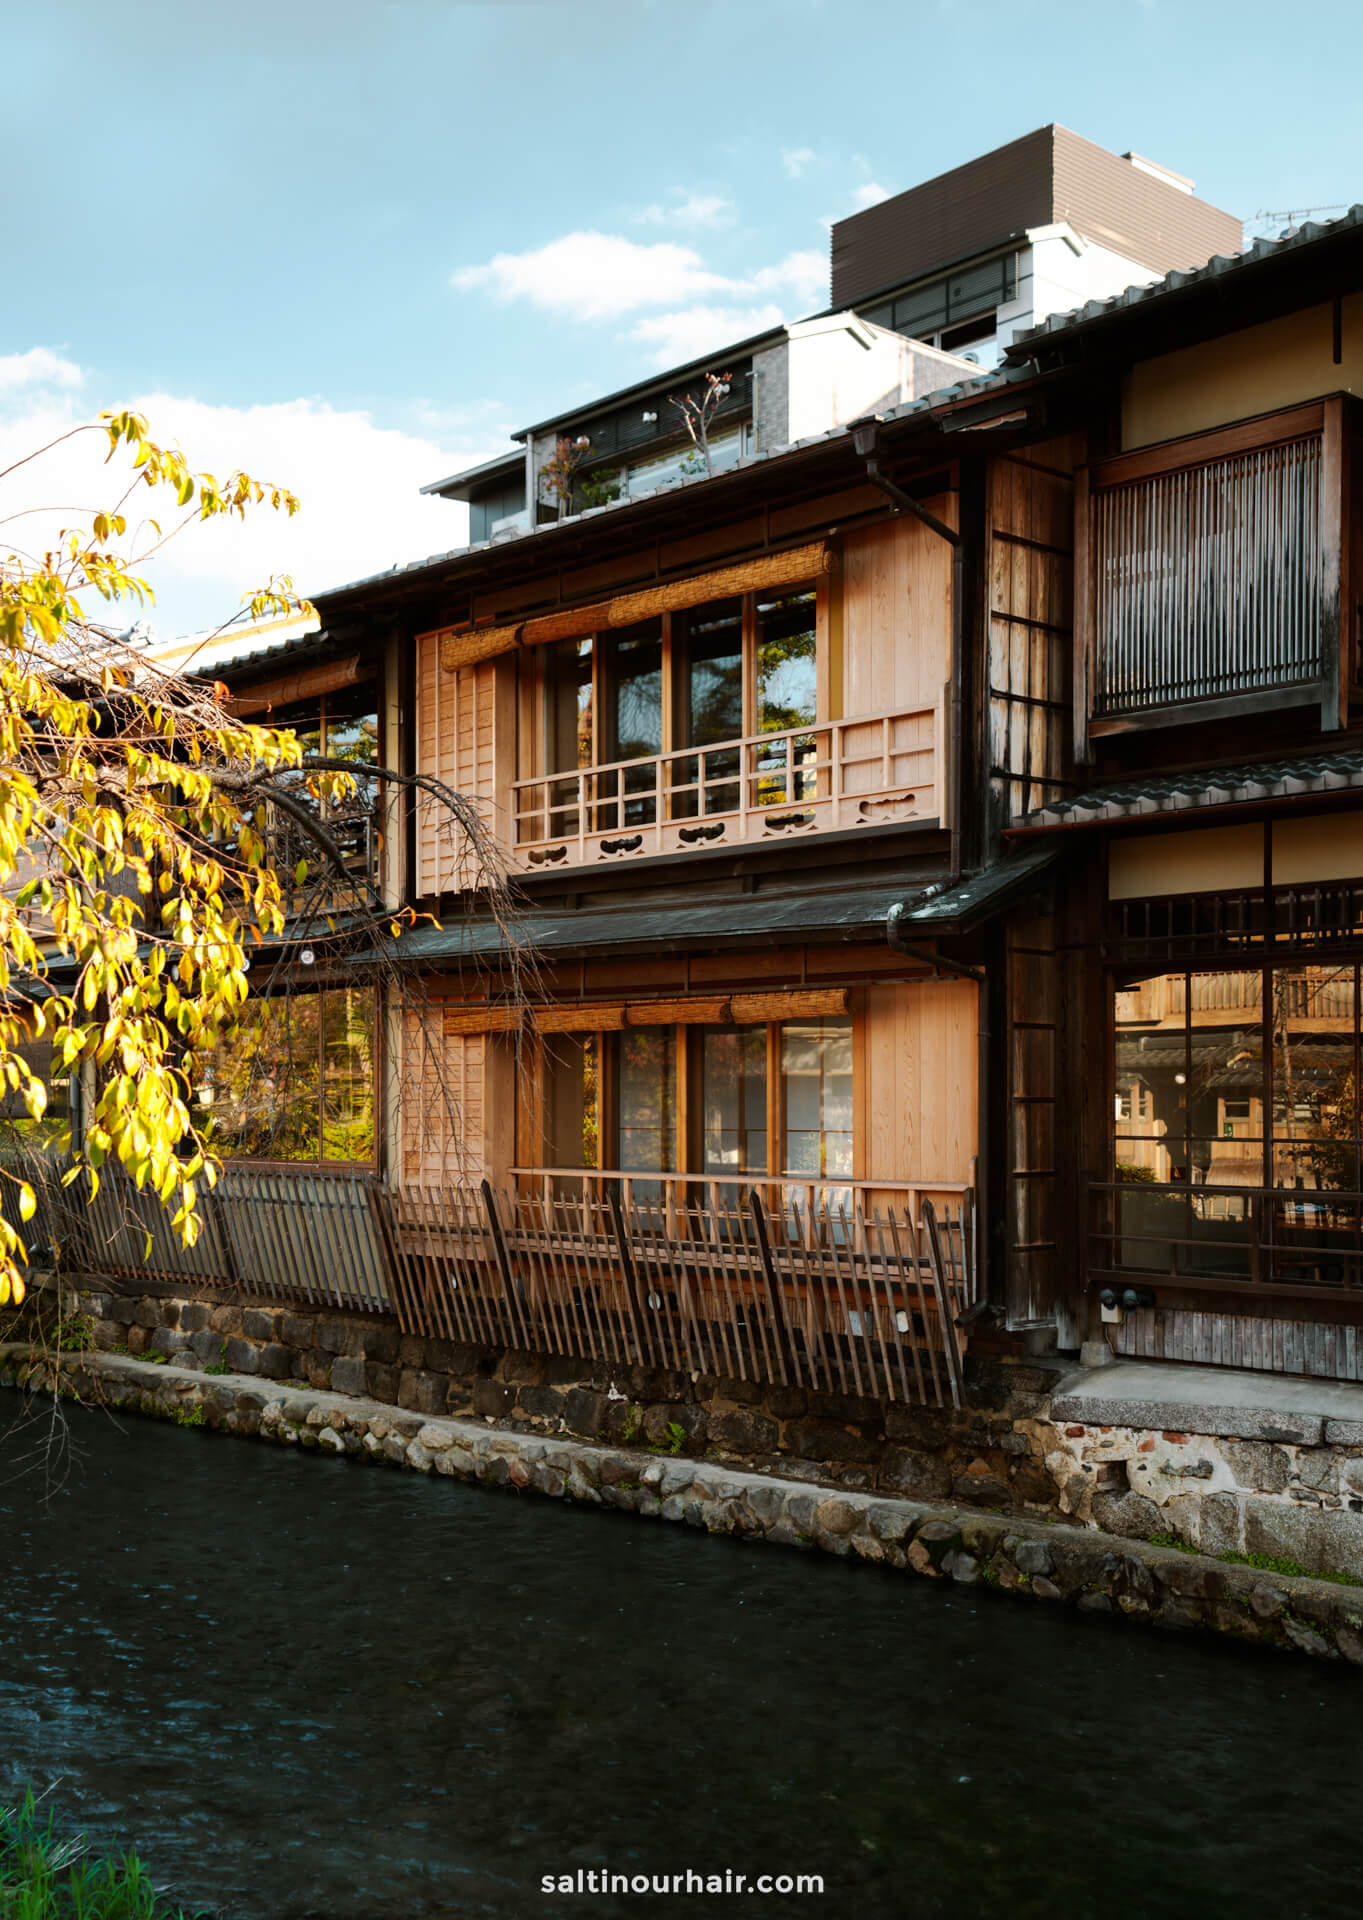 travel around kyoto